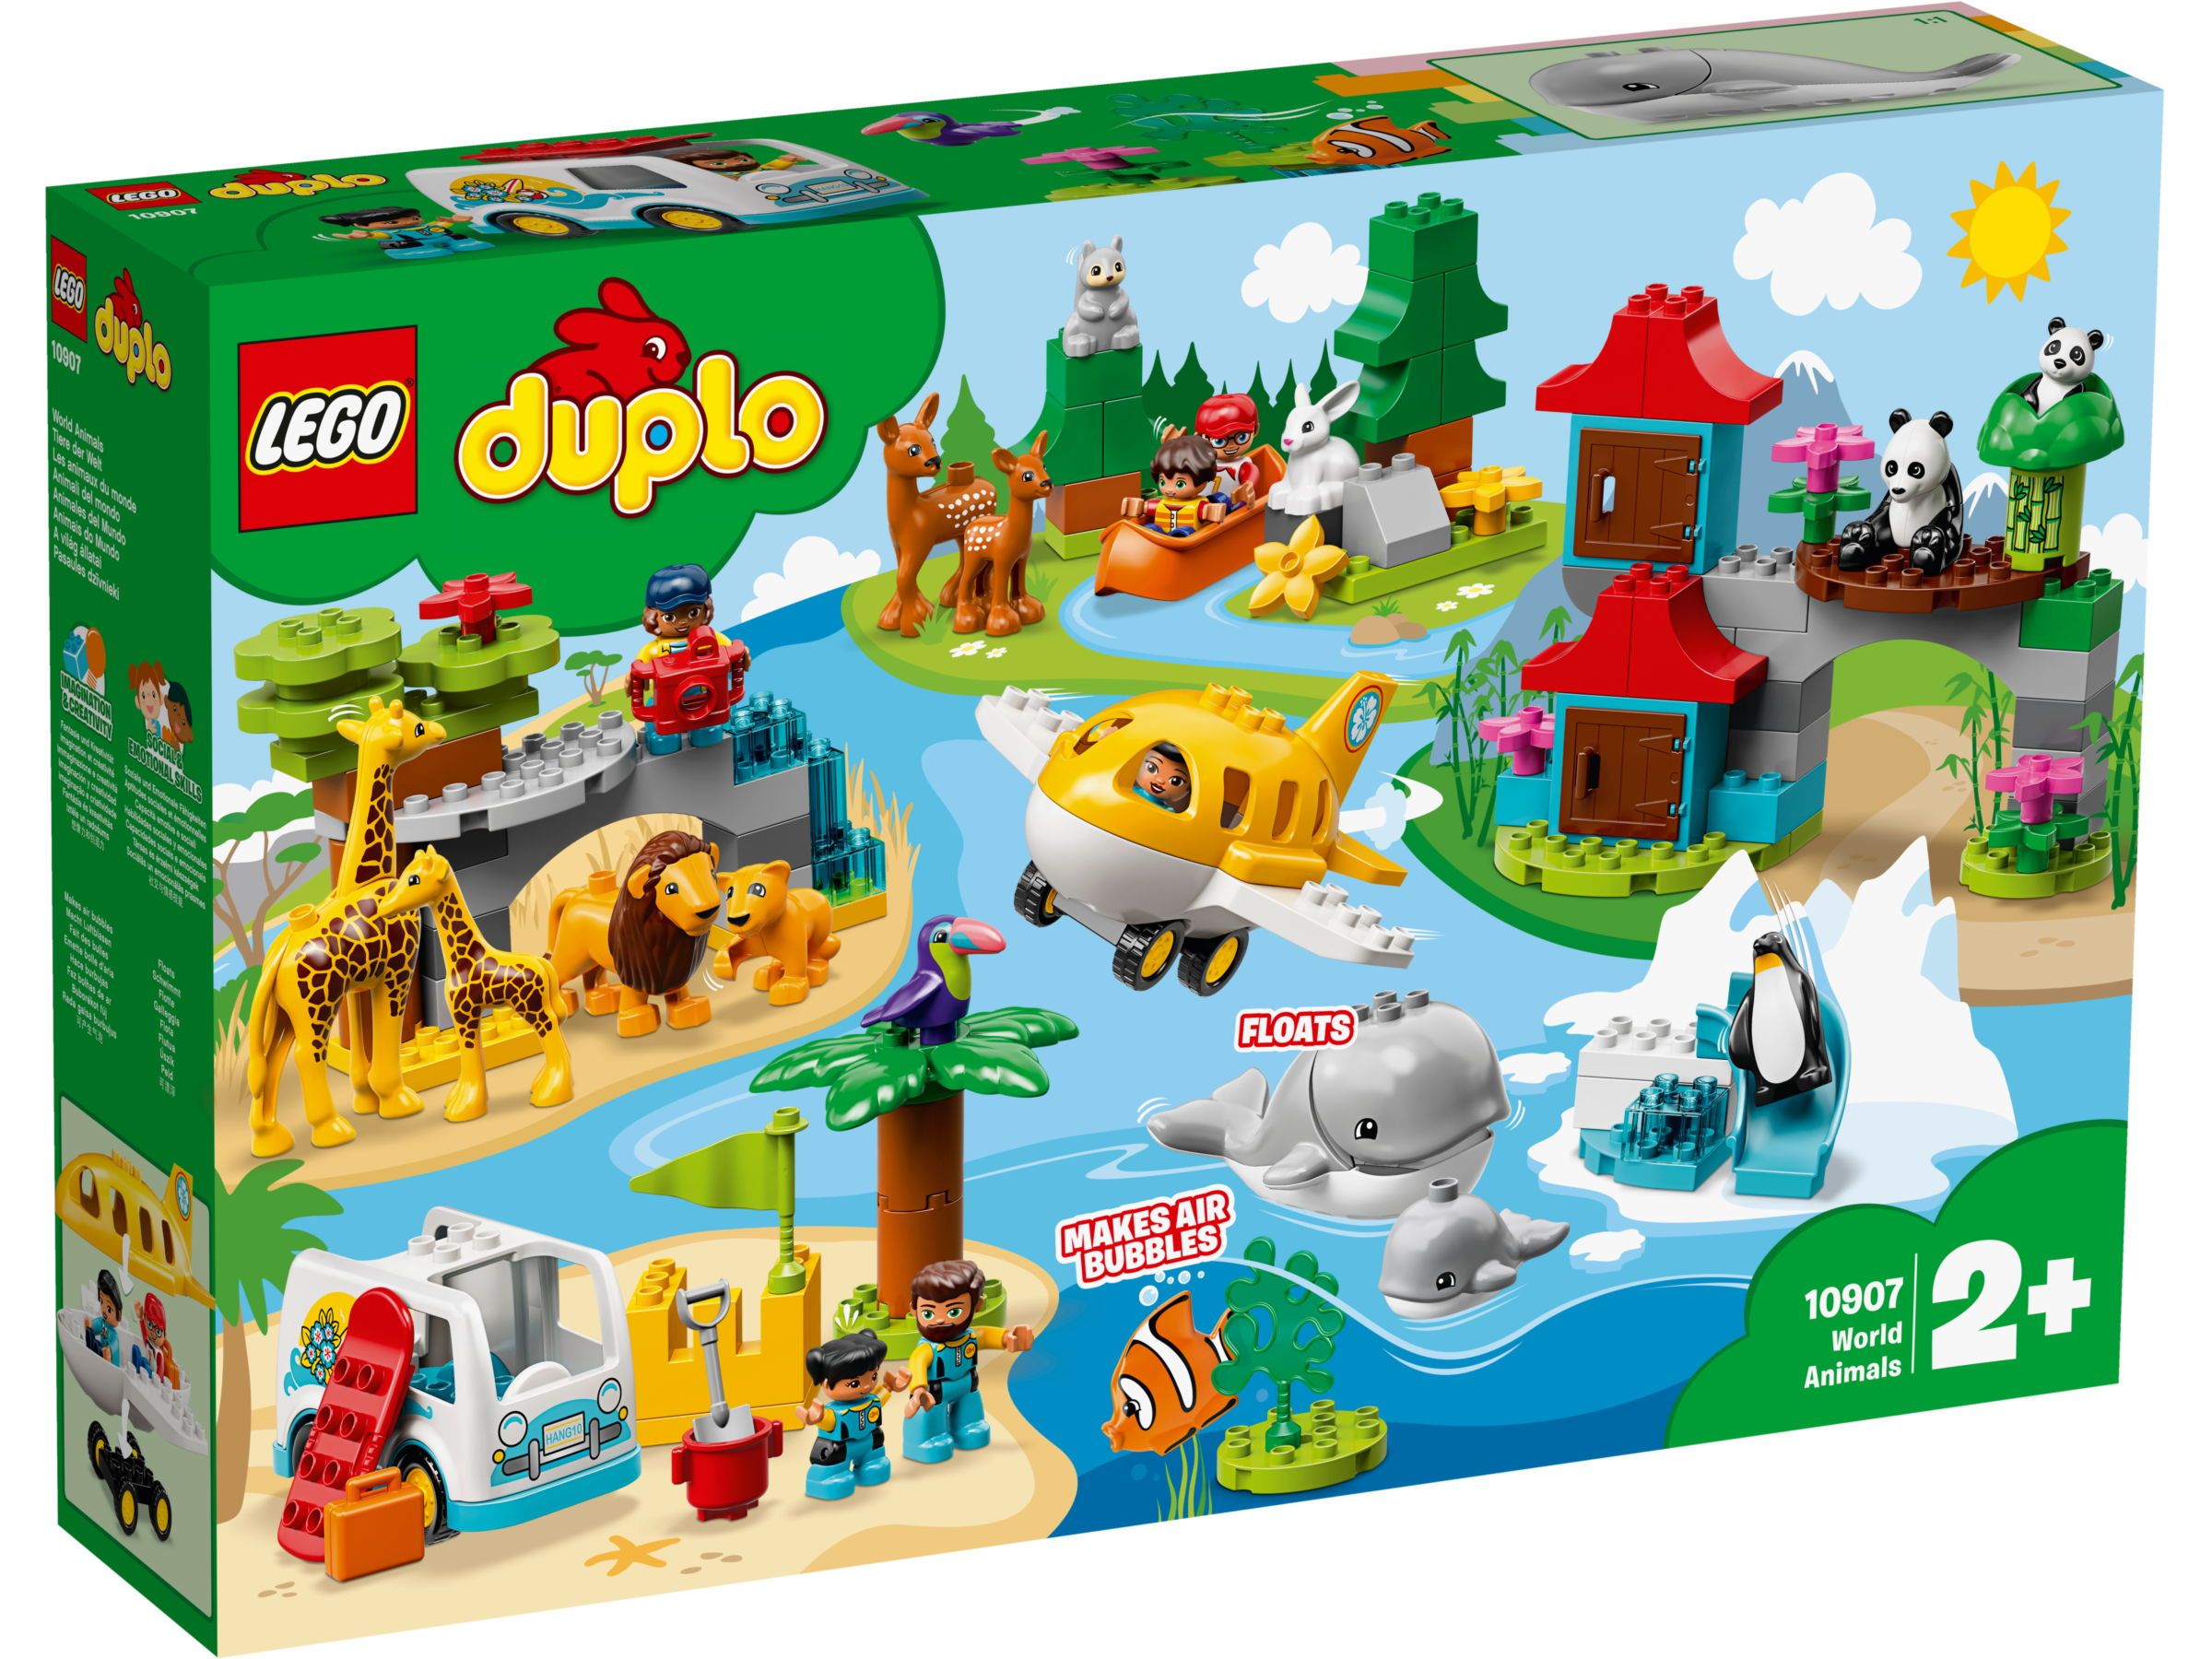 LEGO DUPLO Summer 2019 Official Set 